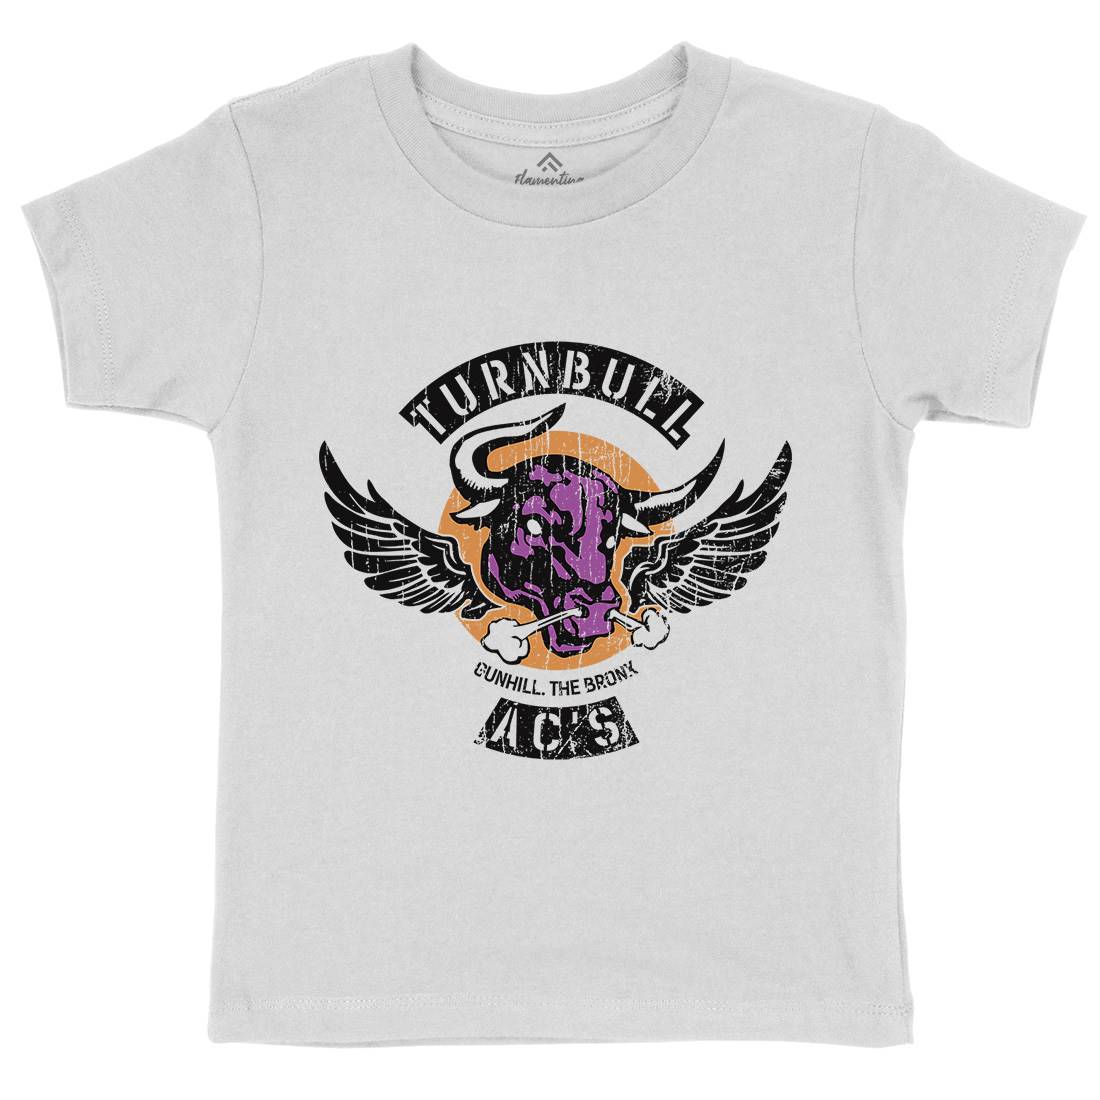 Turnbull Acs Kids Crew Neck T-Shirt Retro D280